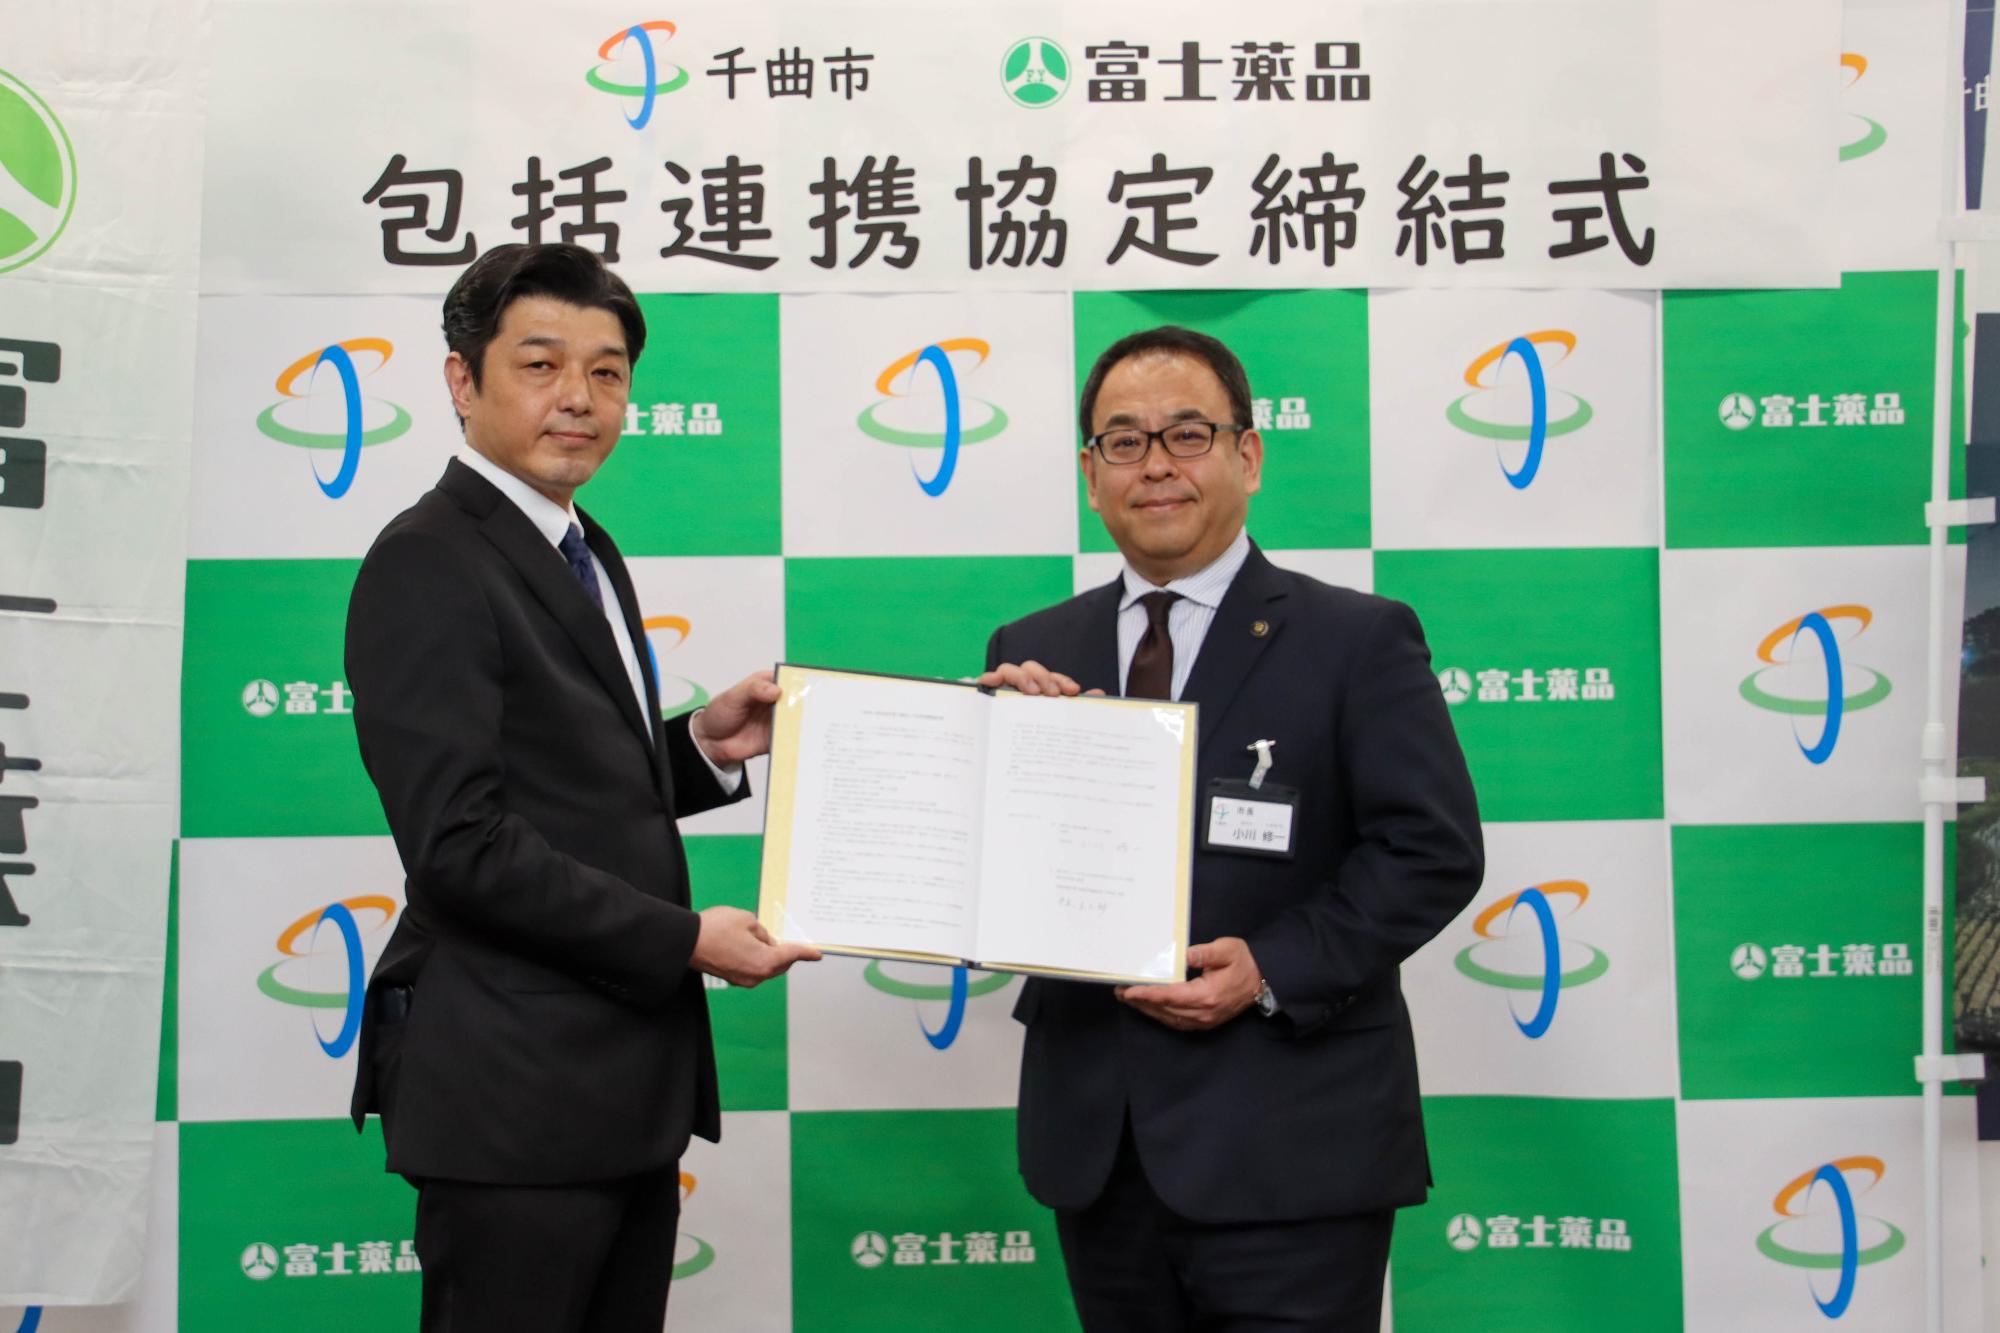 株式会社富士薬品伊庭圭之助部長と小川修一市長の記念撮影の写真